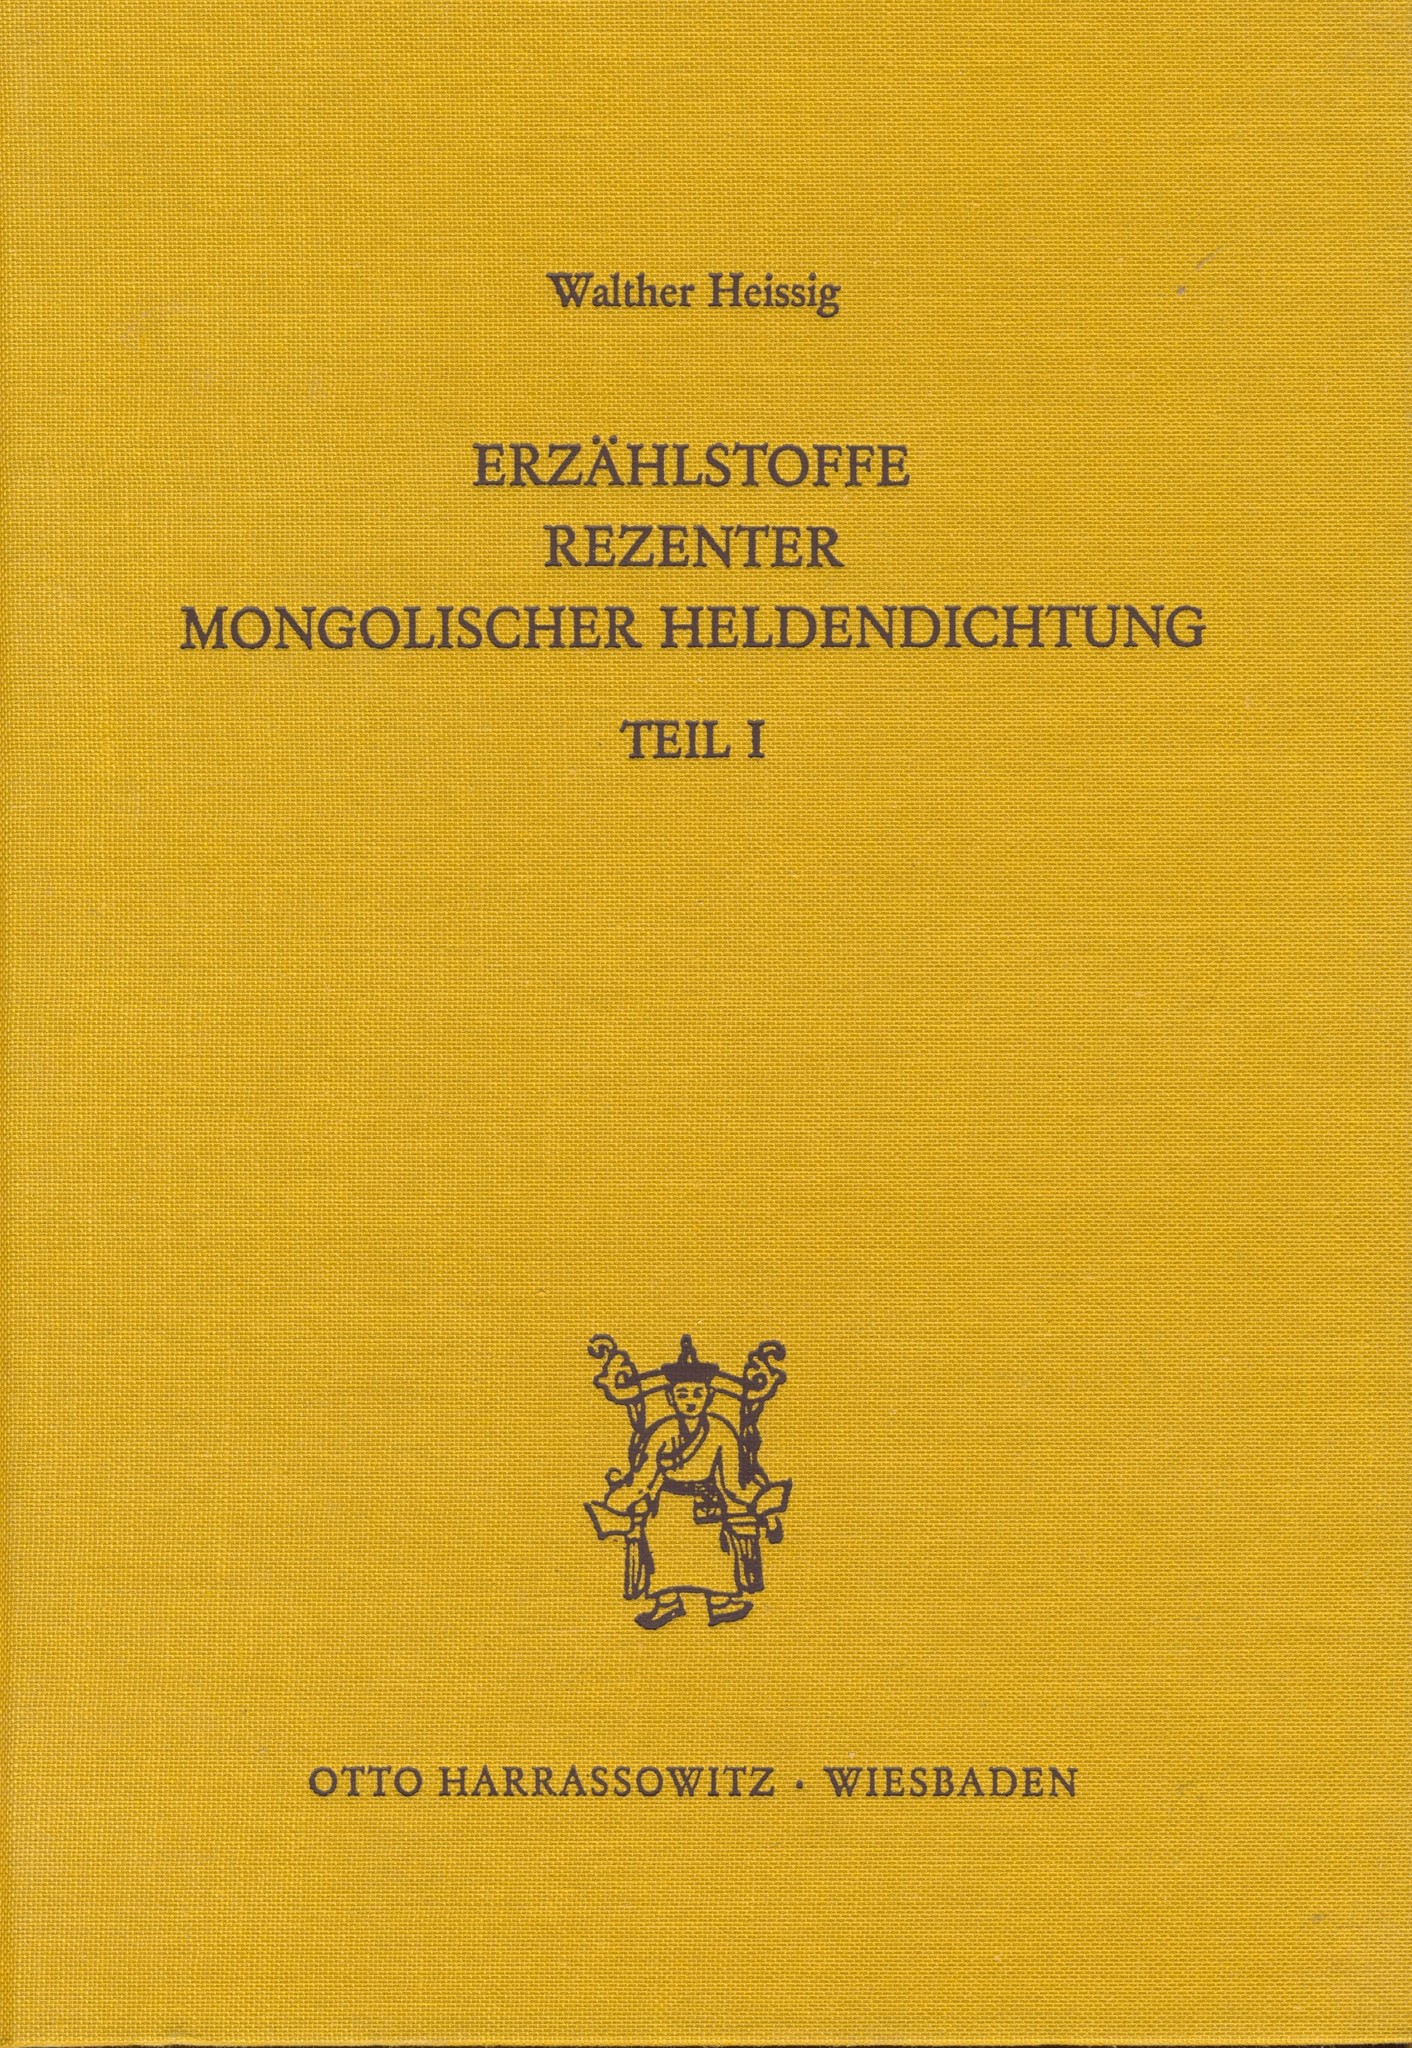 Erzählstoffe Rezenter Mongolischer Heldendichtung, 1+2, von W. Heissig